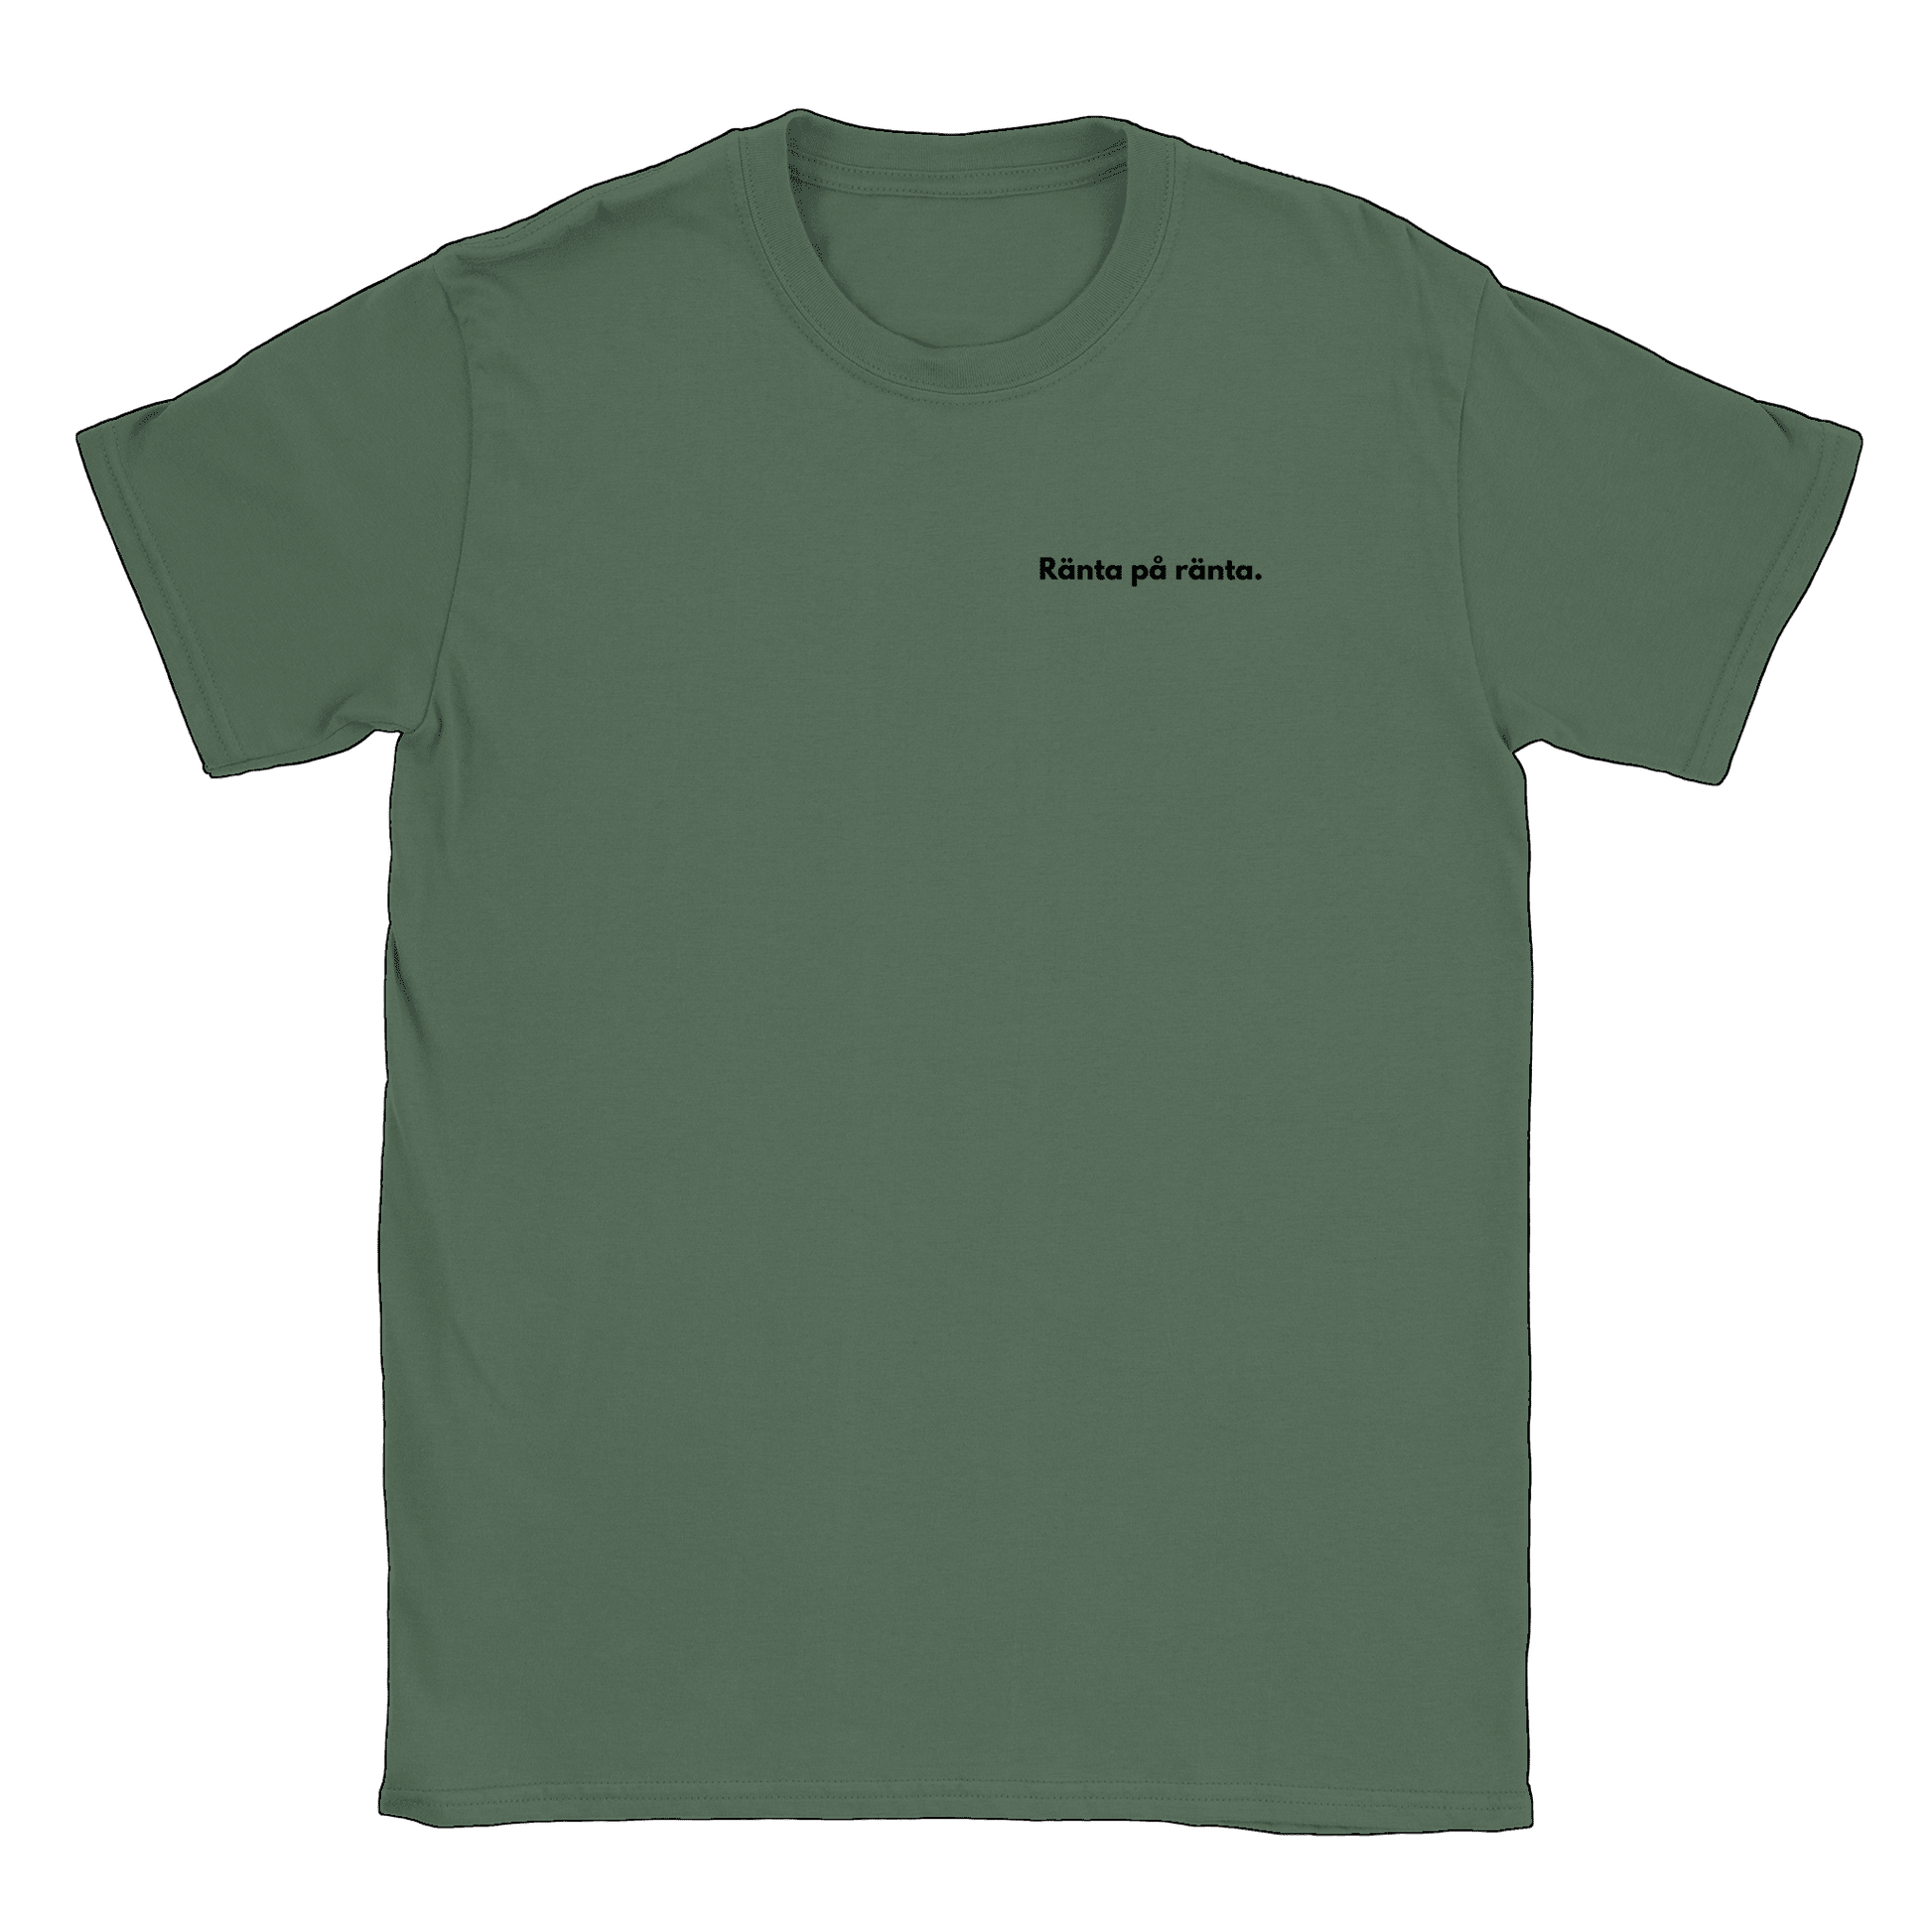 Ränta på ränta liten - T-shirt Militärgrön